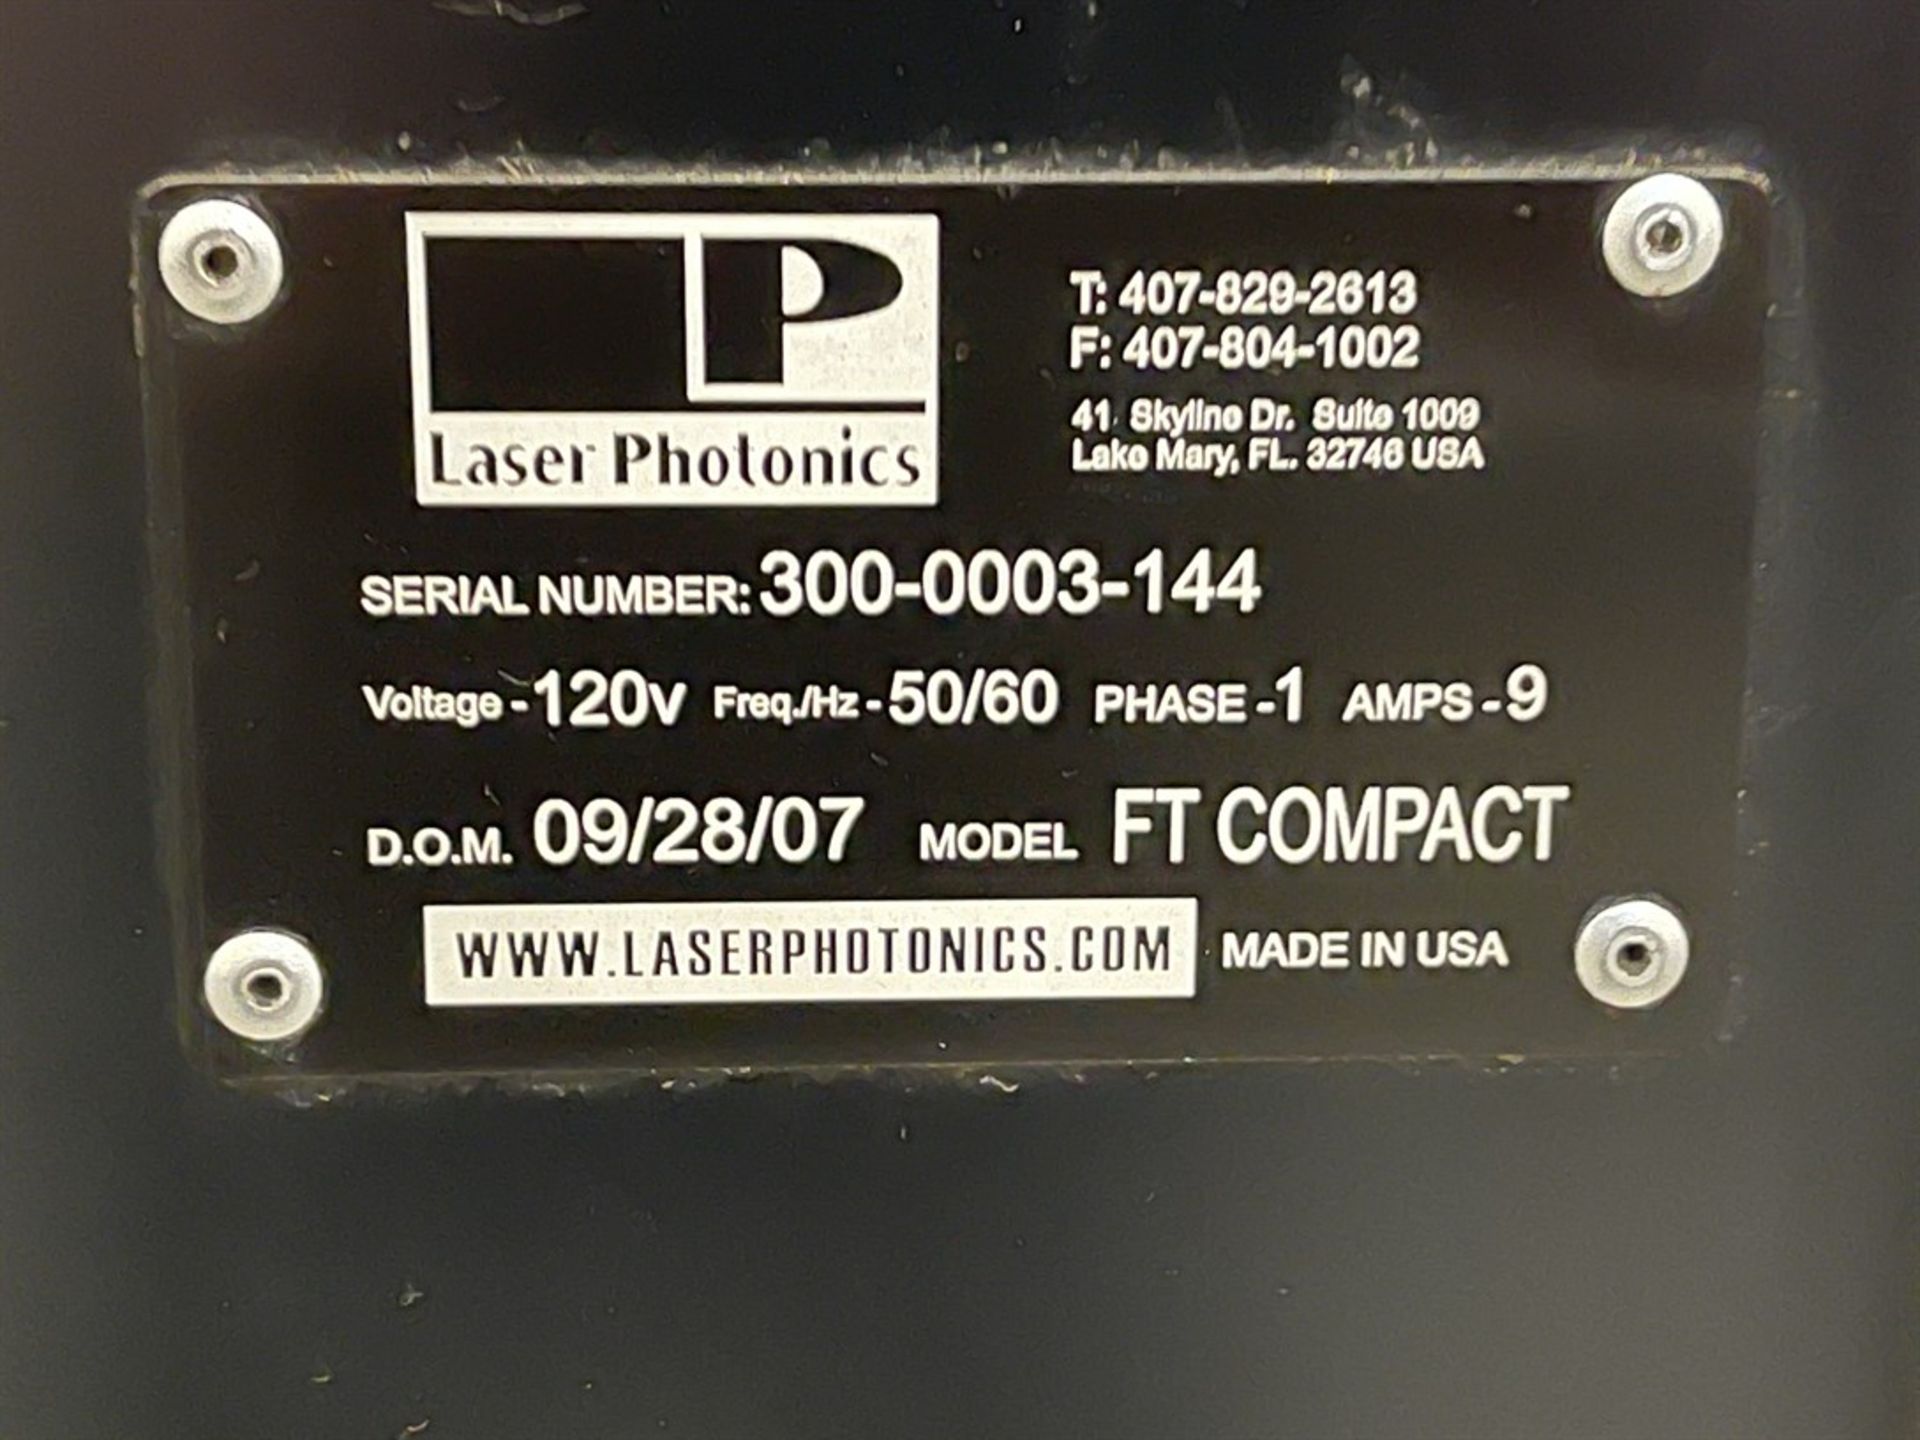 2007 LASER PHOTONICS FT Compact Fiber Laser Engraver, s/n 300-0003-144 - Image 4 of 4